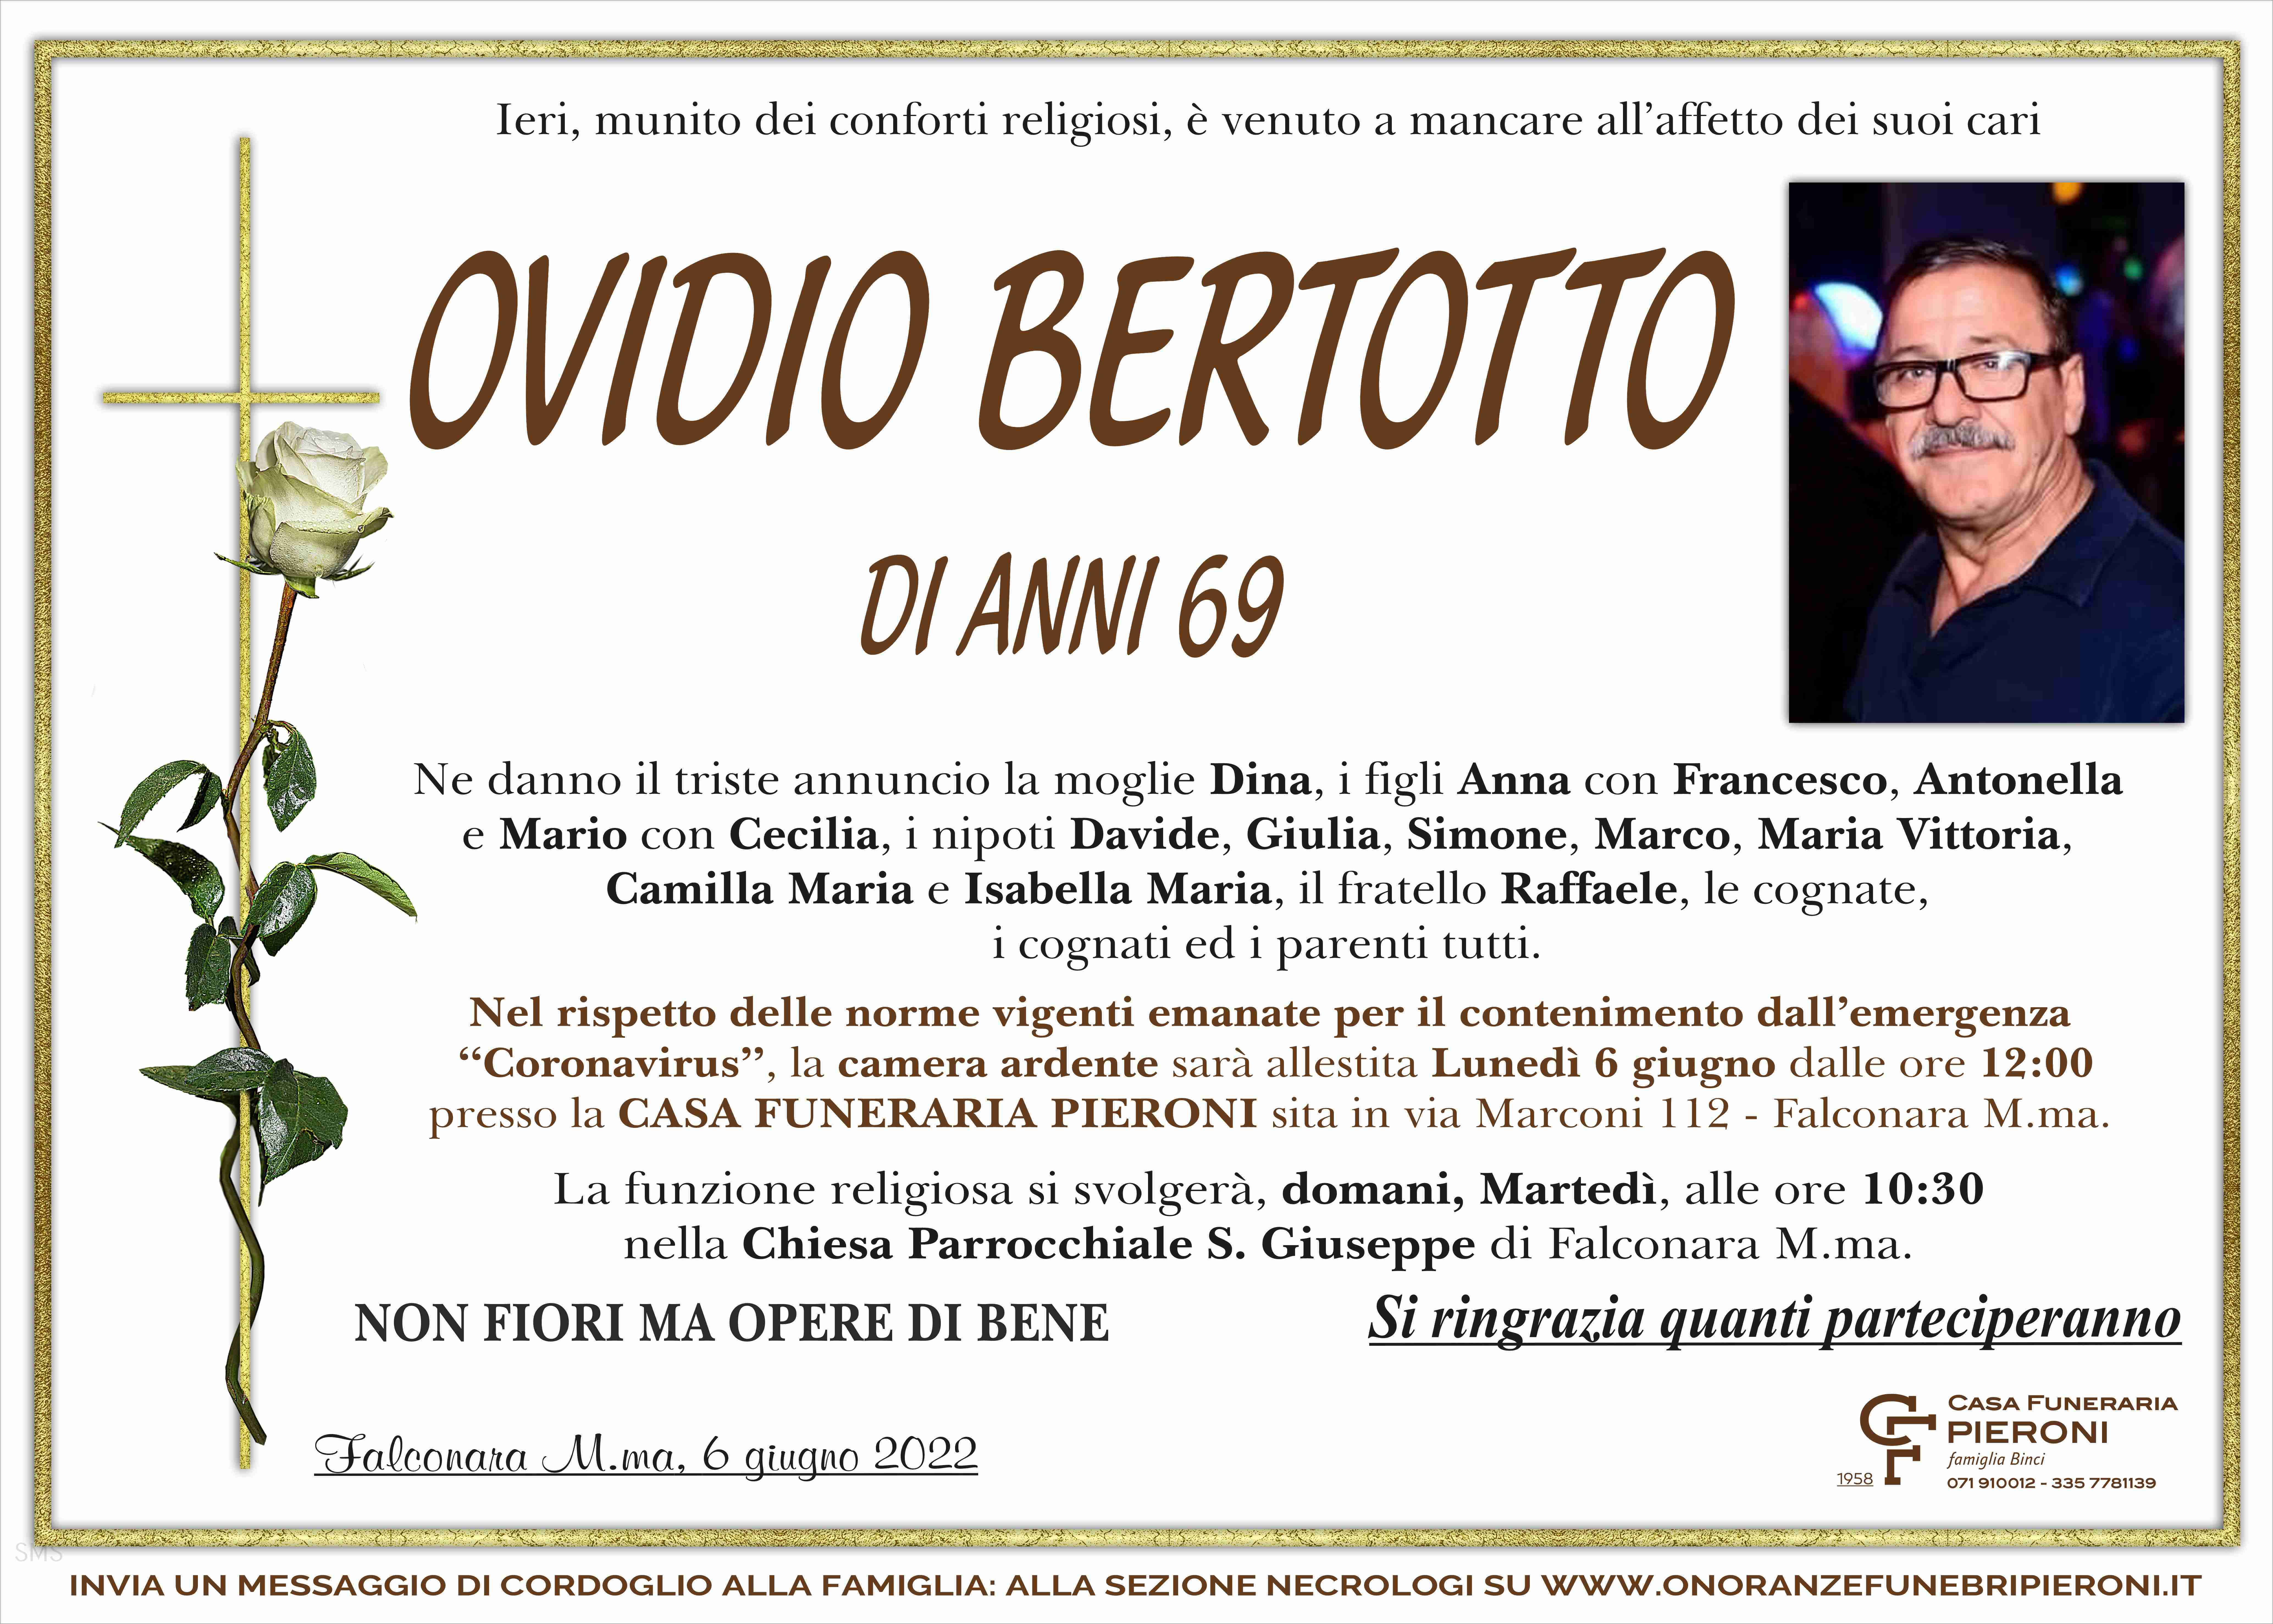 Ovidio Bertotto